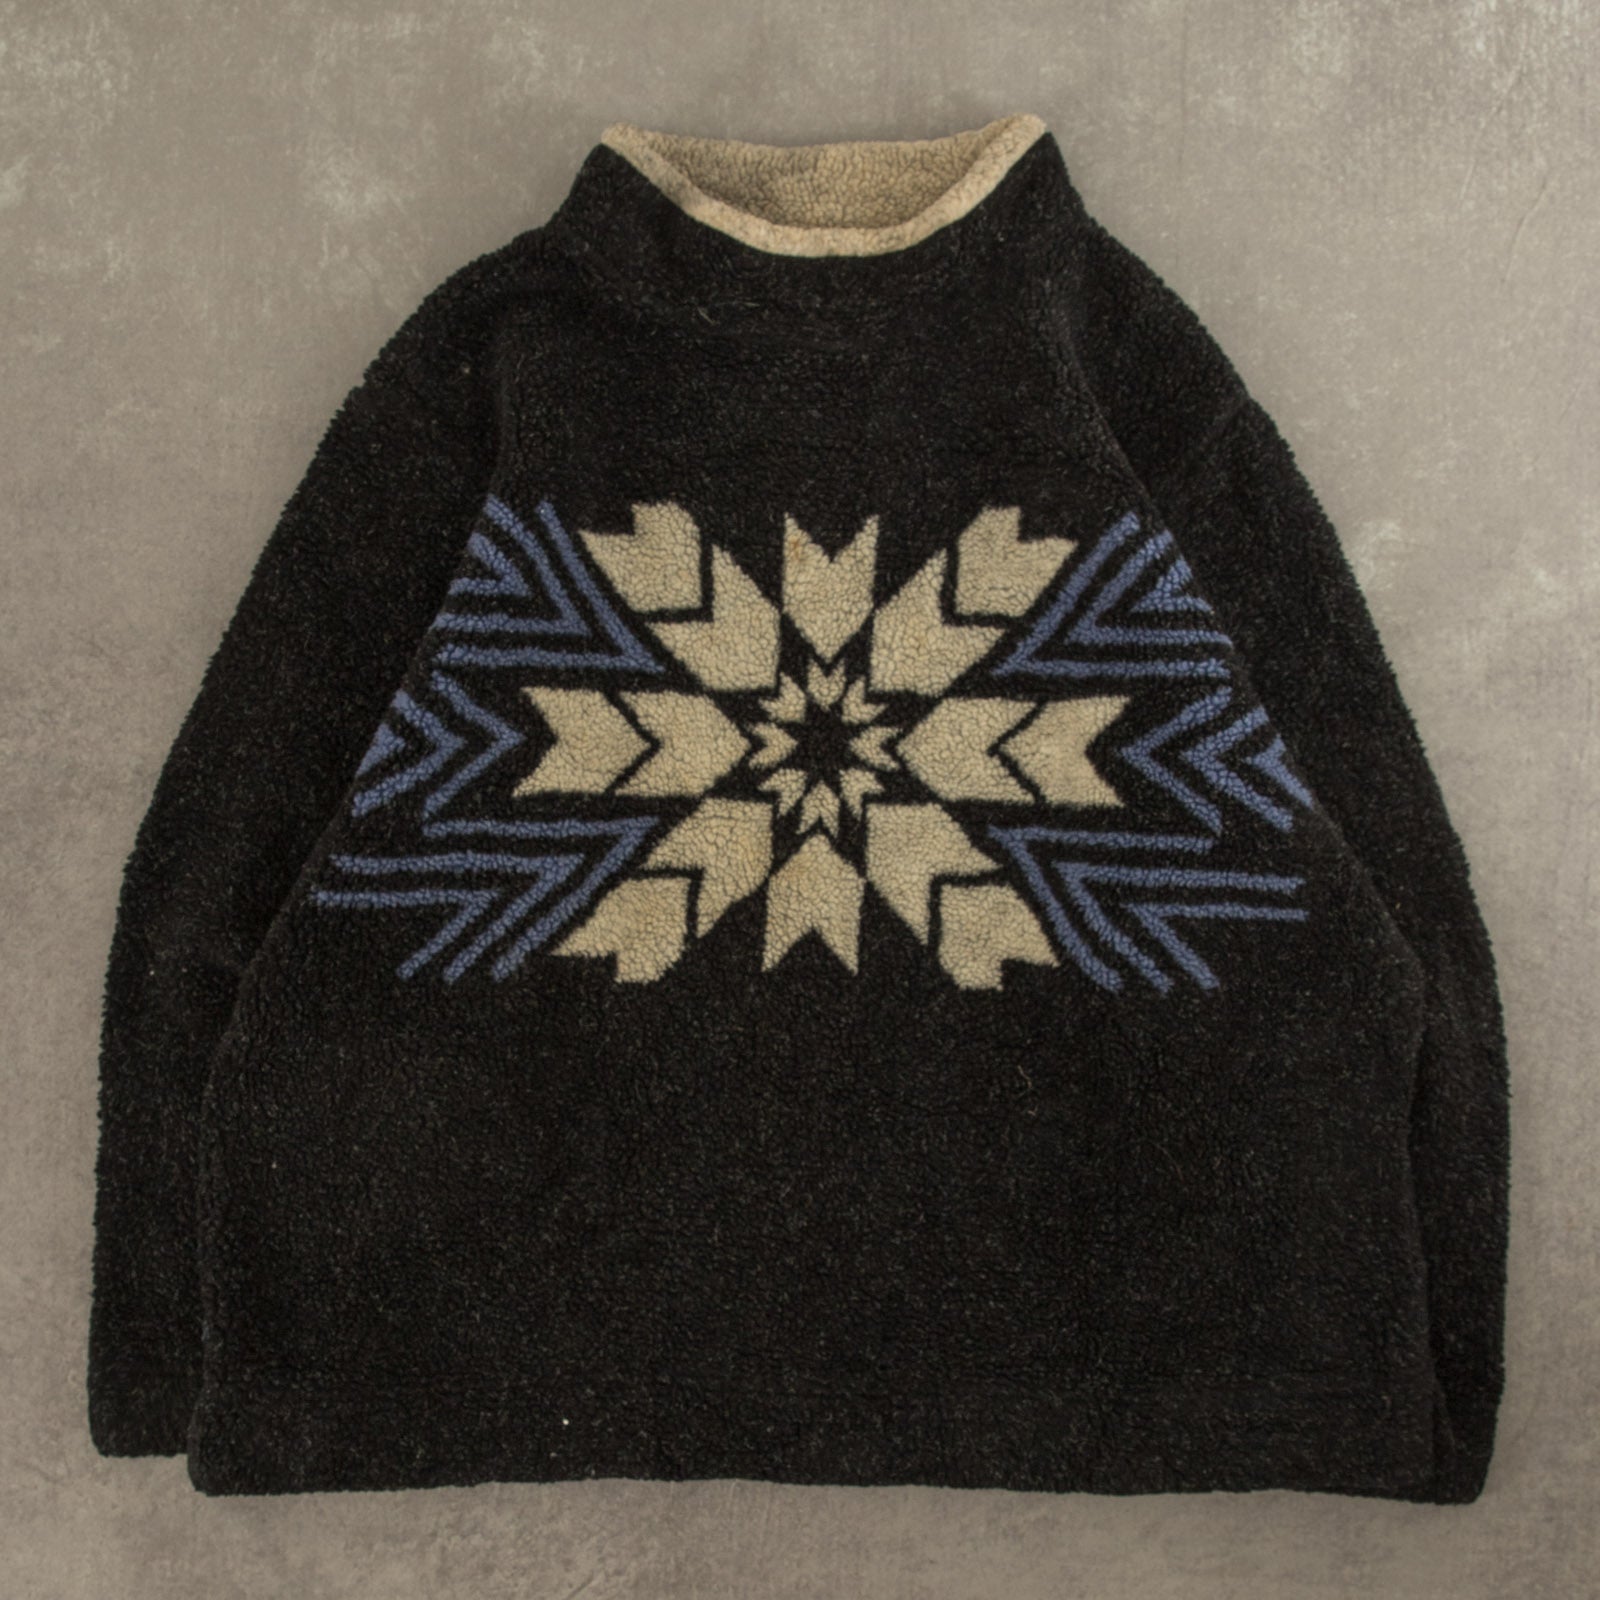 Patterned Fleece Sweatshirt